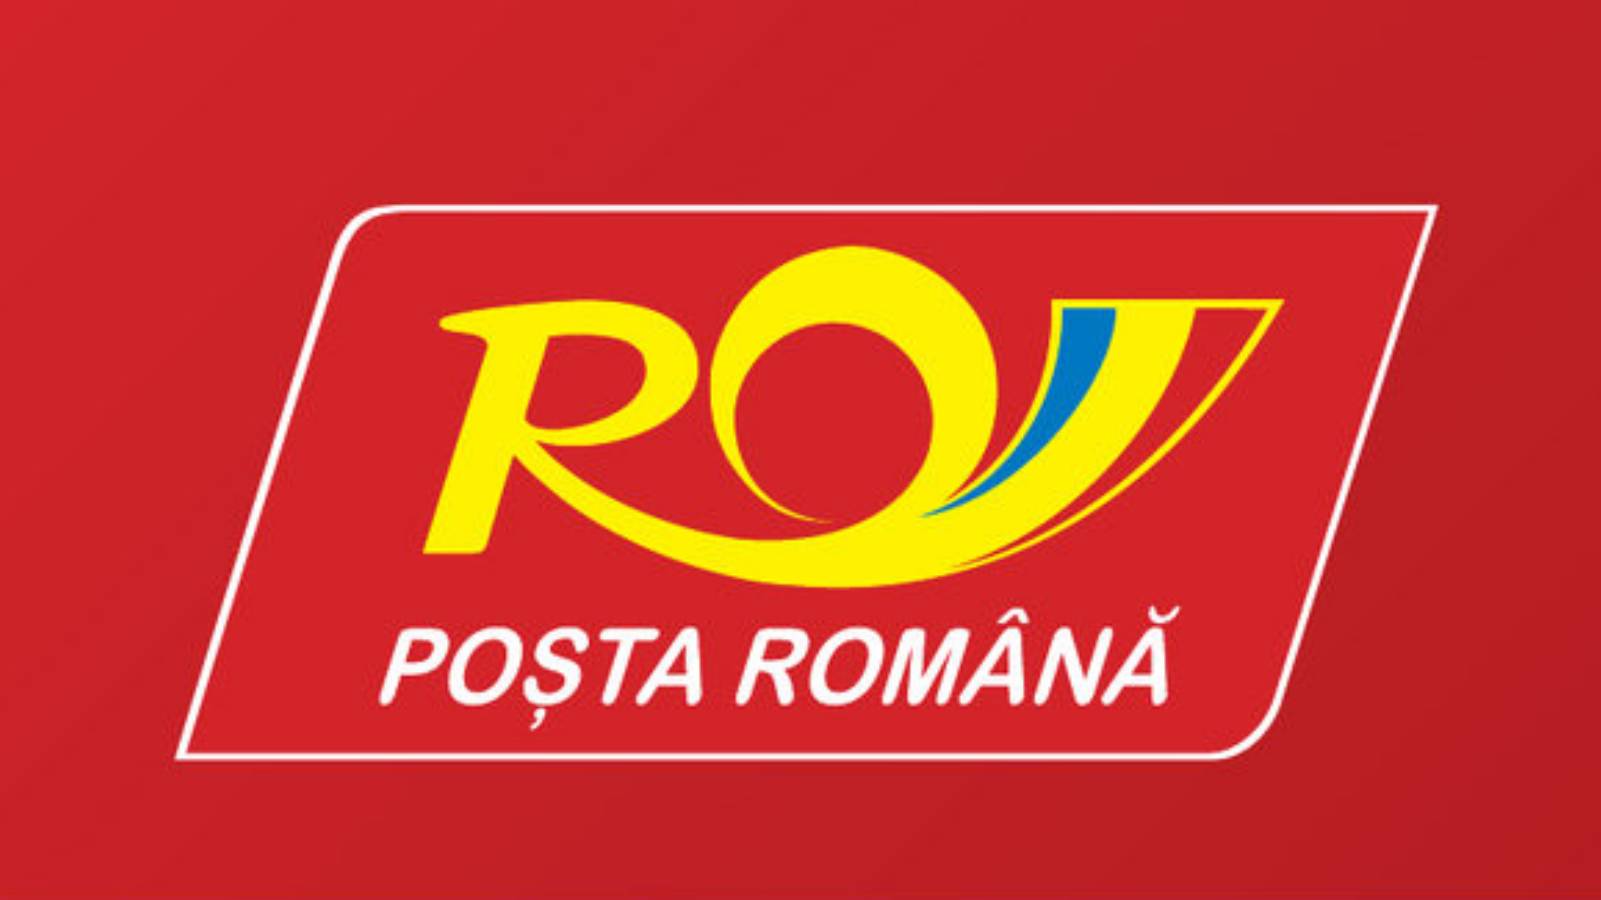 Postkarte der Rumänischen Post